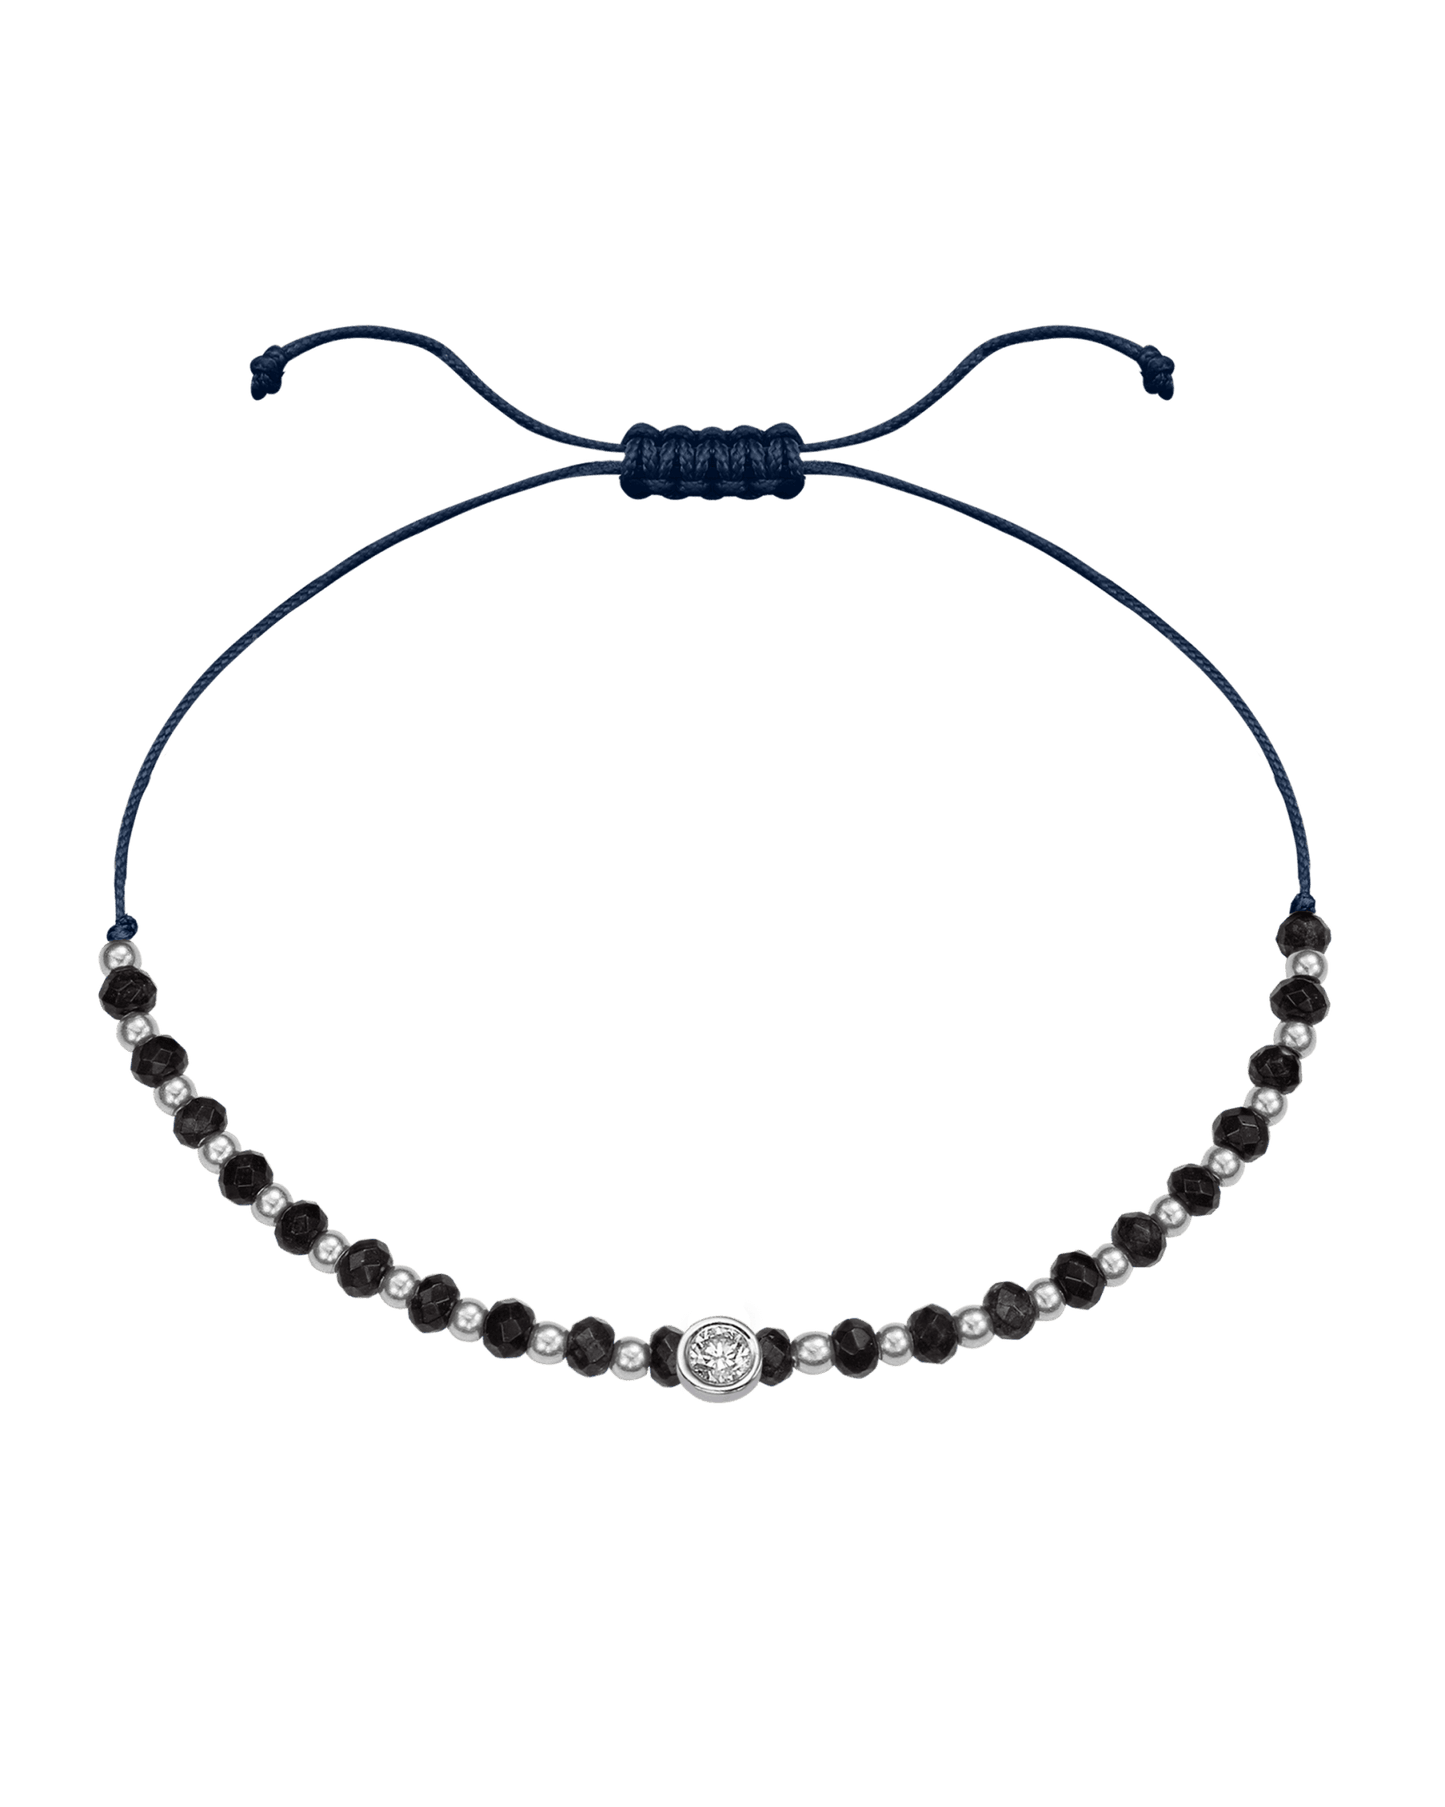 Black Onyx Gemstone String of Love Bracelet for Protection - 14K White Gold Bracelets 14K Solid Gold Navy Blue Large: 0.1ct 